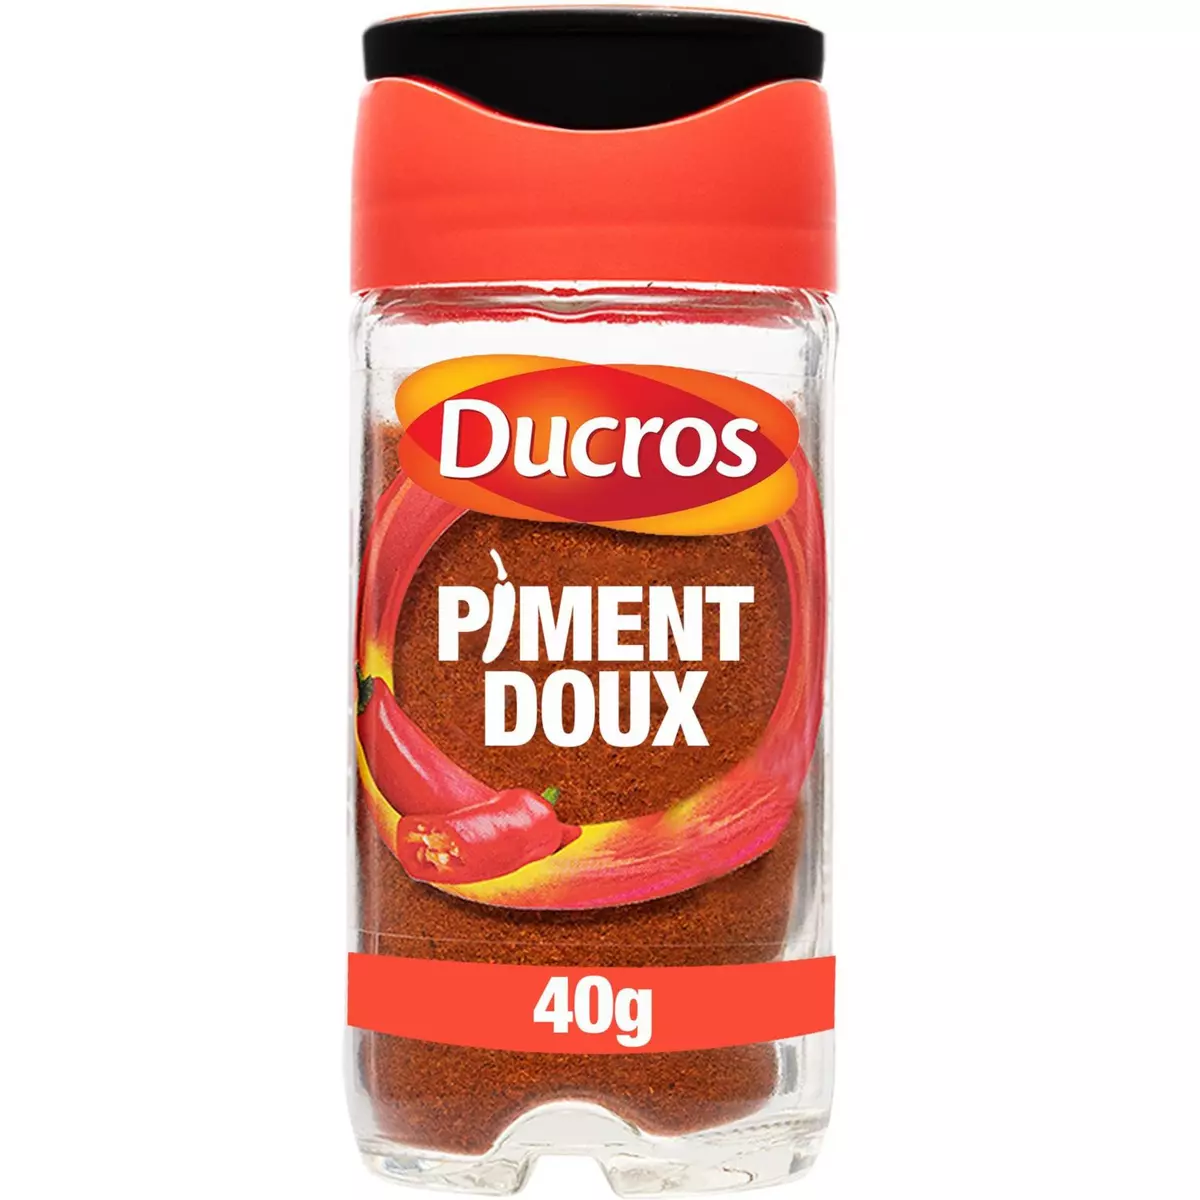 DUCROS Piment doux moulu flacon 40g